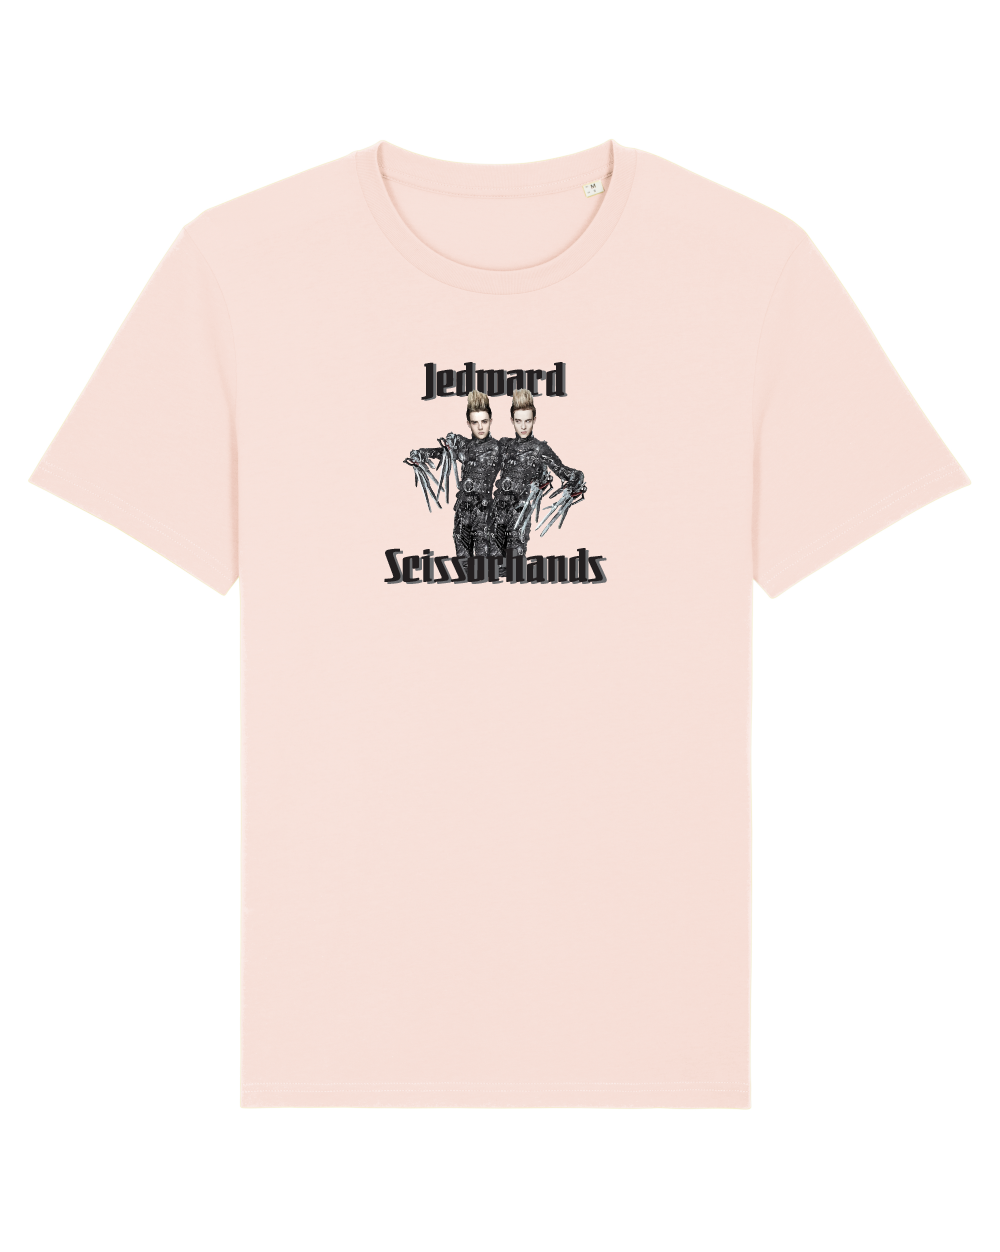 Jedward Scissorhands - Unisex Tshirt